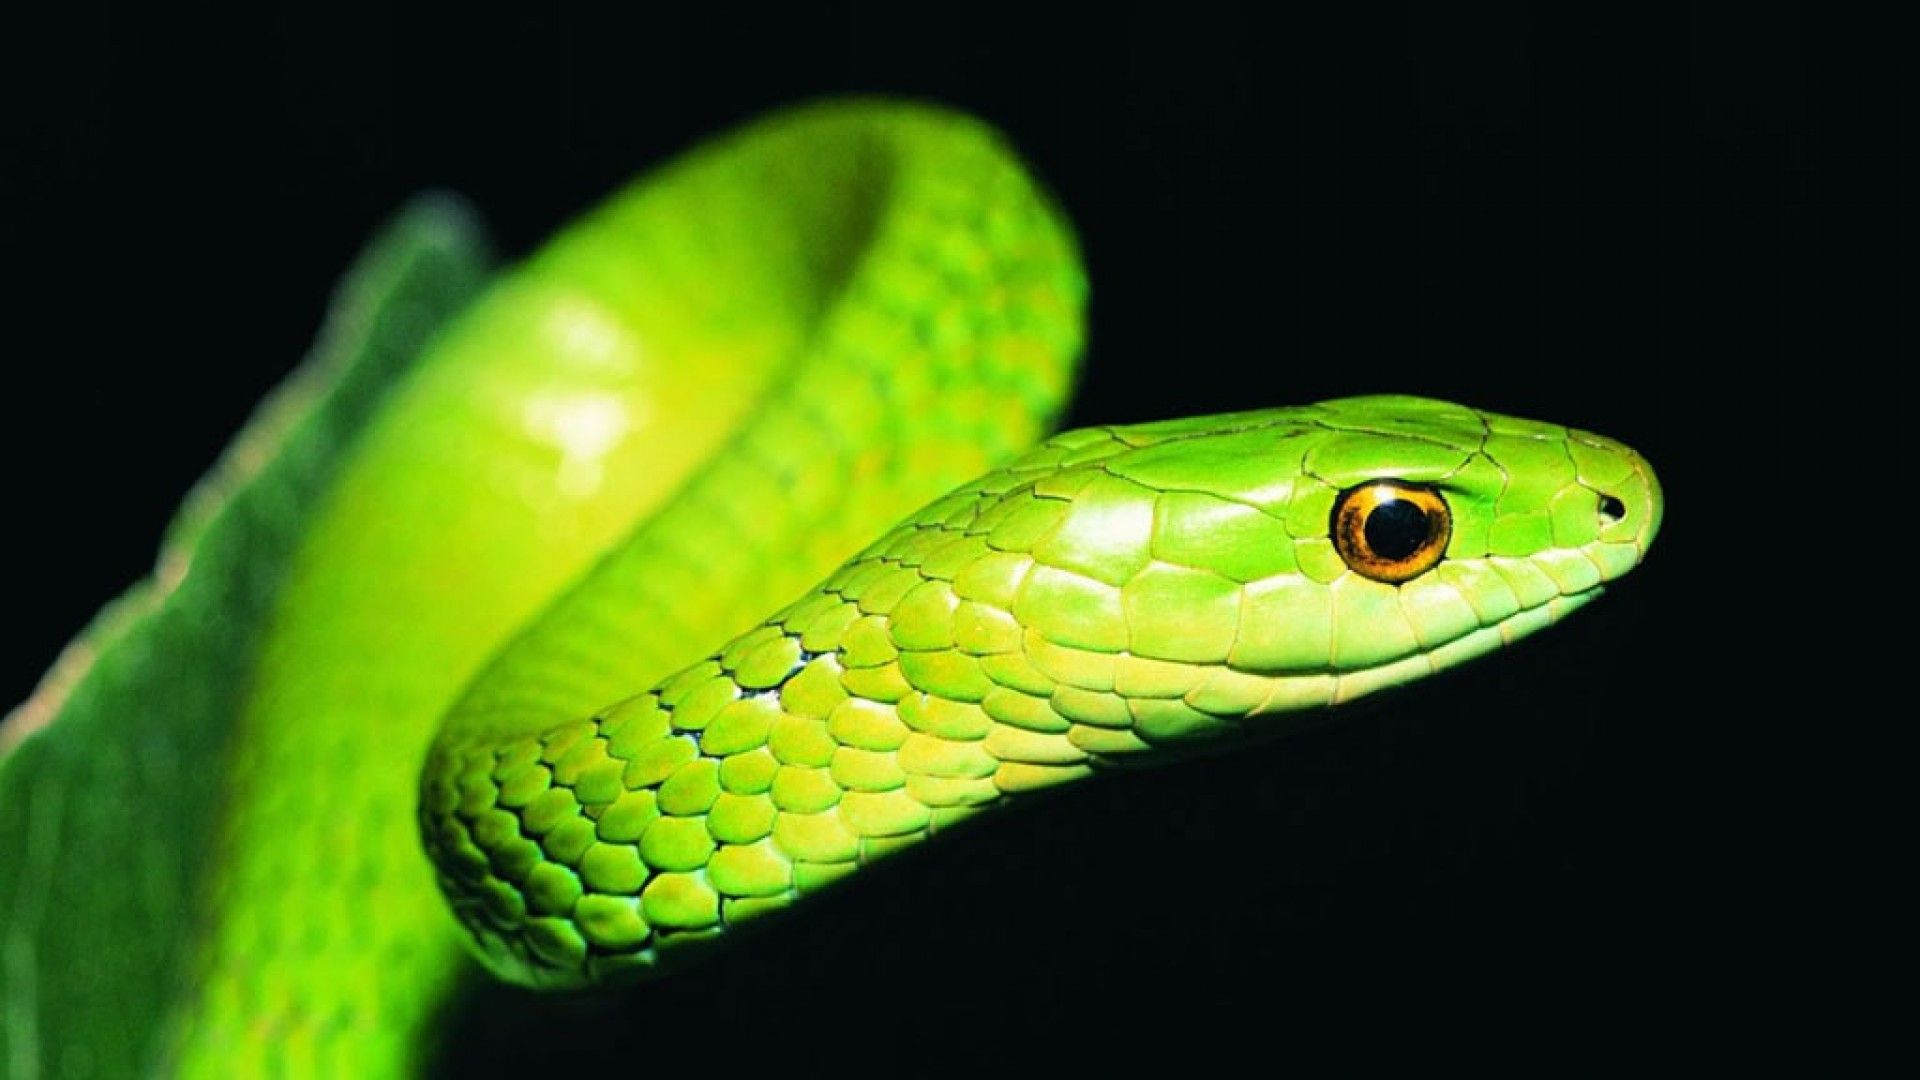 Bamboo Green Snake – HD Black Wallpaper | Reiseziele | Pinterest ...